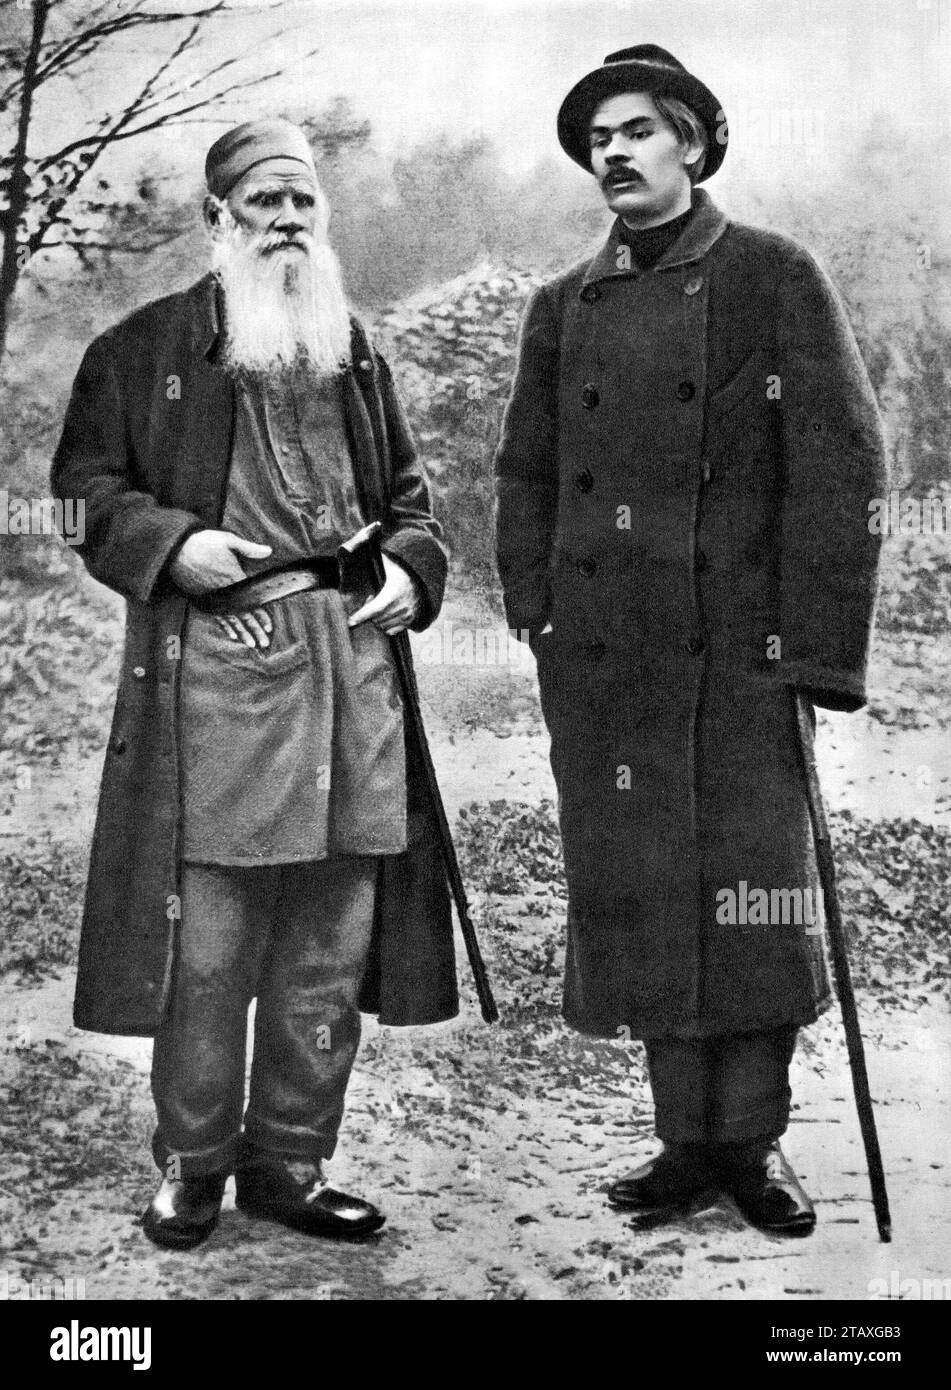 Léon Tolstoï et Maxim Gorki. Portrait des écrivains russes le comte Lev Nikolaïevitch Tolstoï (1828-1910) et Alexeï Maximovitch Peshkov (1868-1936) dans Yasnaya Polyana, 1900 Banque D'Images